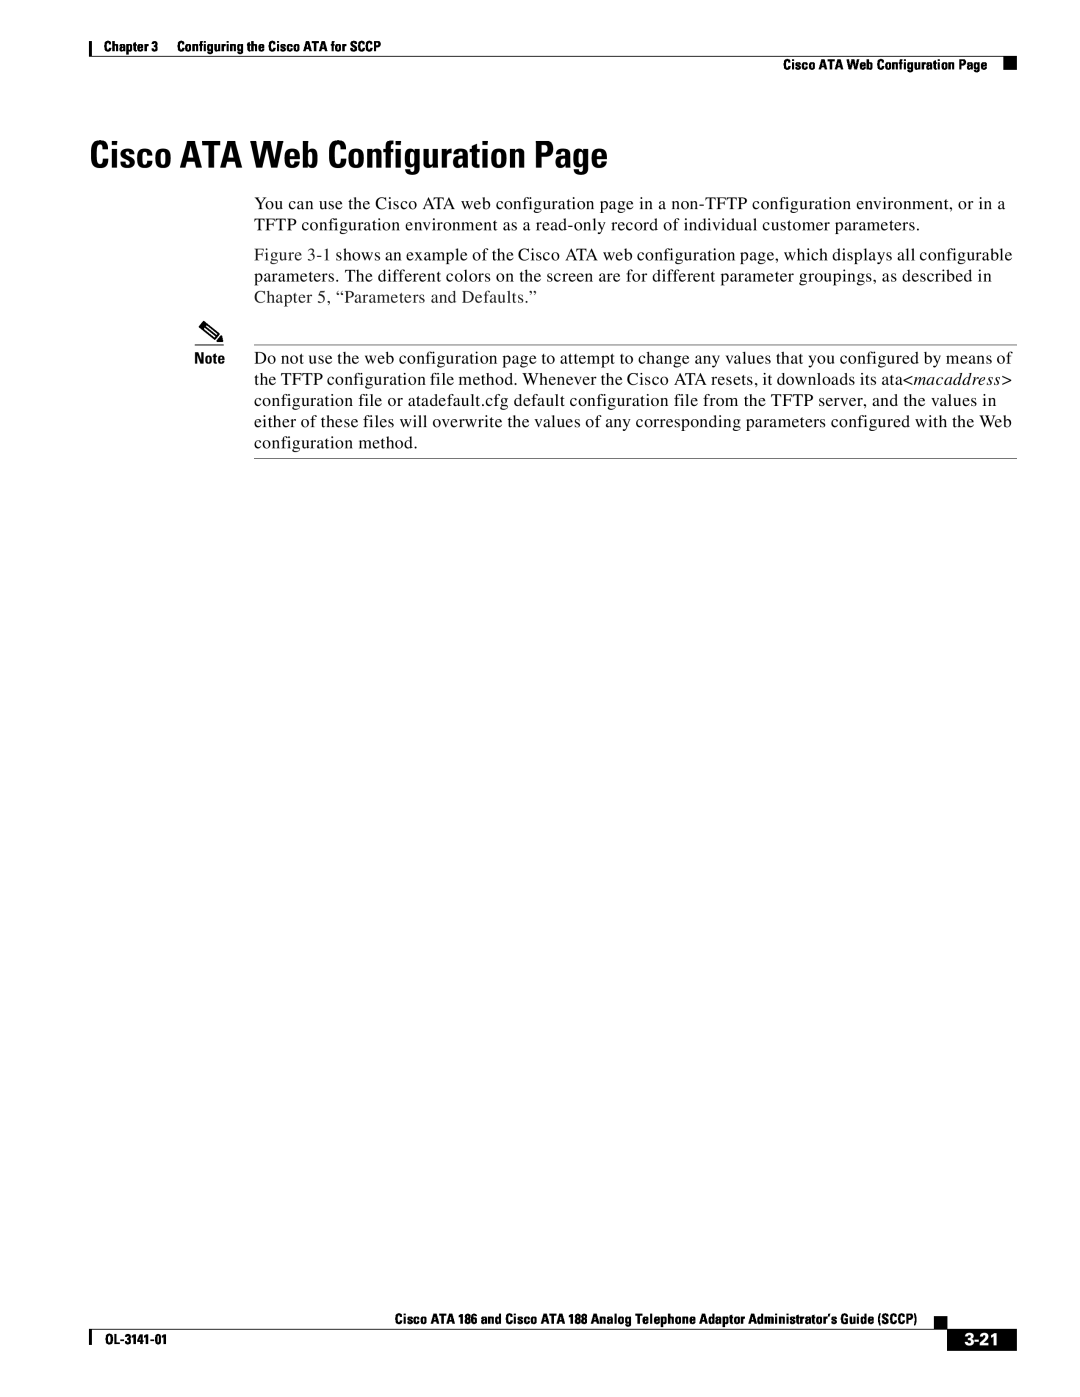 Cisco Systems ATA 188, ATA 186 manual Cisco ATA Web Configuration Page, 3-21 